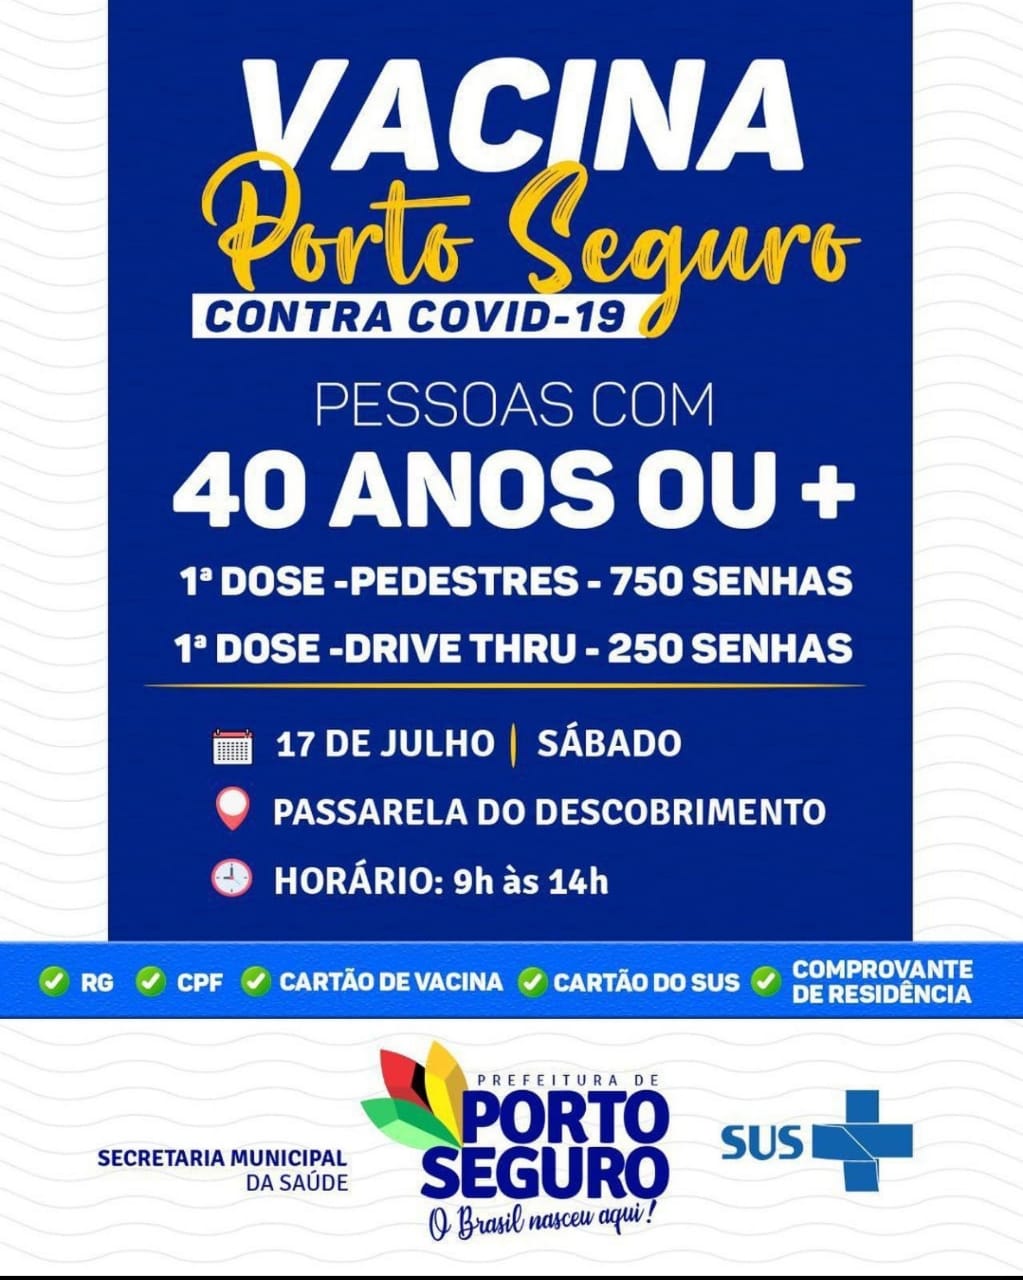 Neste Sábado Vacina Contra Covid-19 para pedestres e sistema Drive Thru em Porto Seguro 3